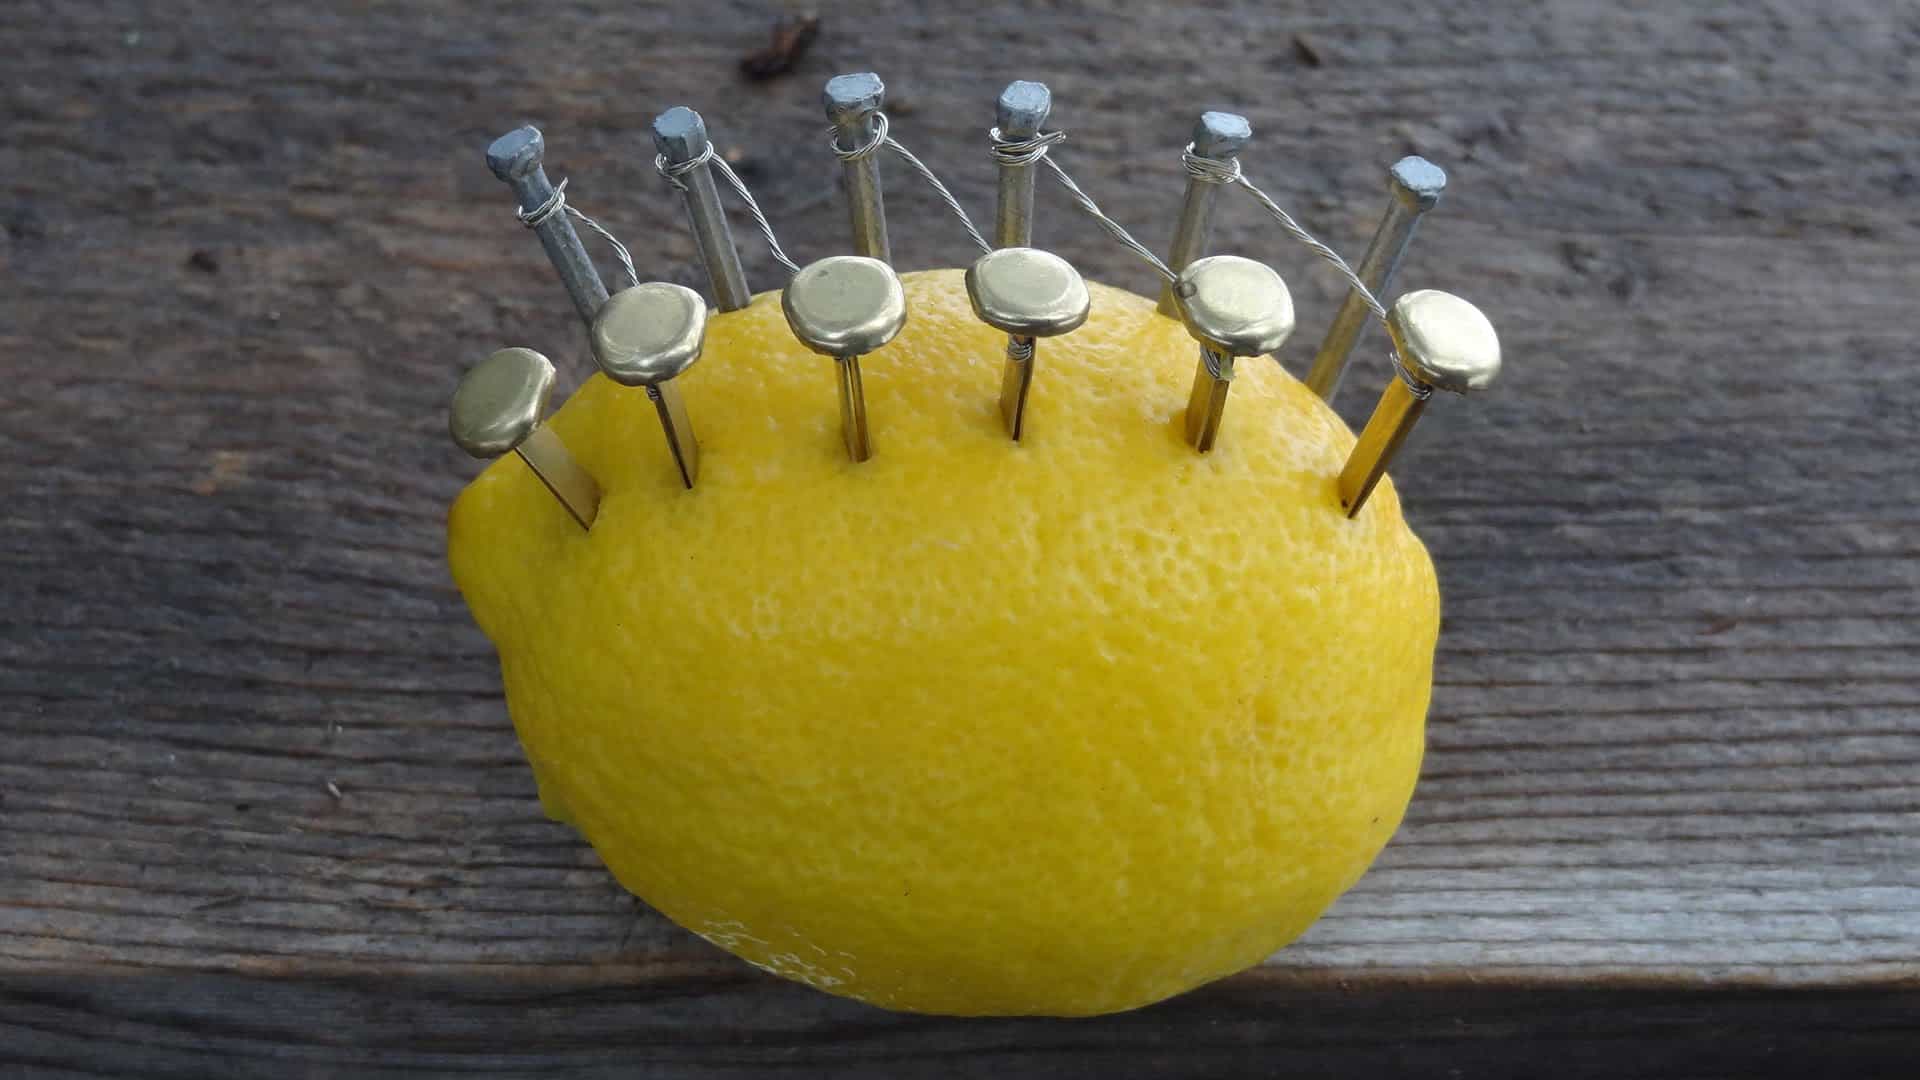 Come accendere un fuoco con un limone